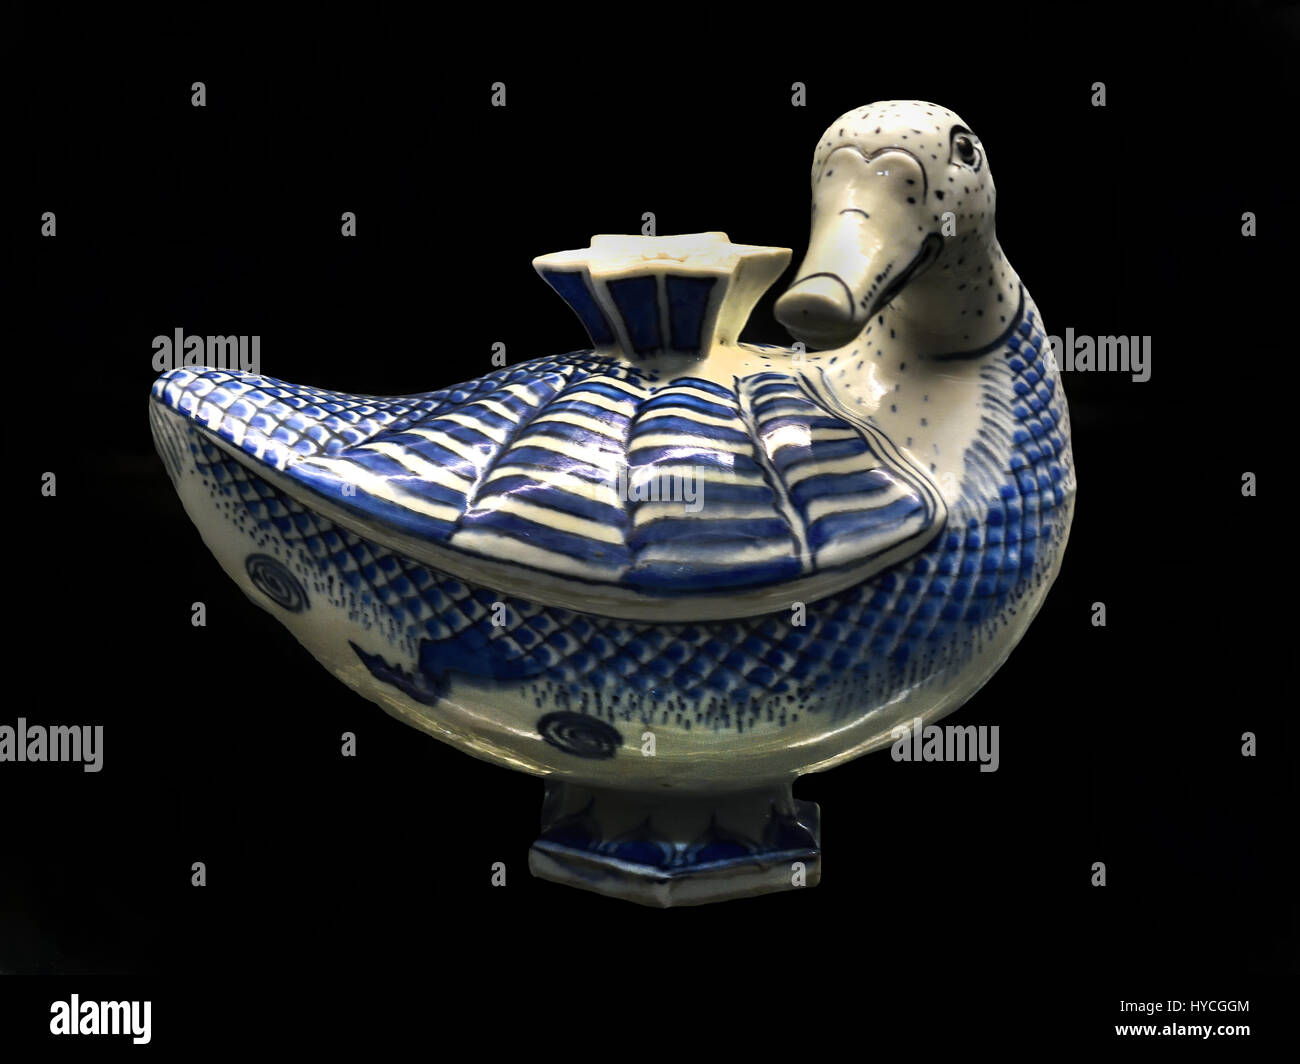 De canard sous glaçure bleu et noir ( poterie pipe - pipe de l'eau ) dynastie safavide en 17ème siècle : l'Iran, Qaliyan (Asie, Moyen-Orient, l'Iran) Banque D'Images